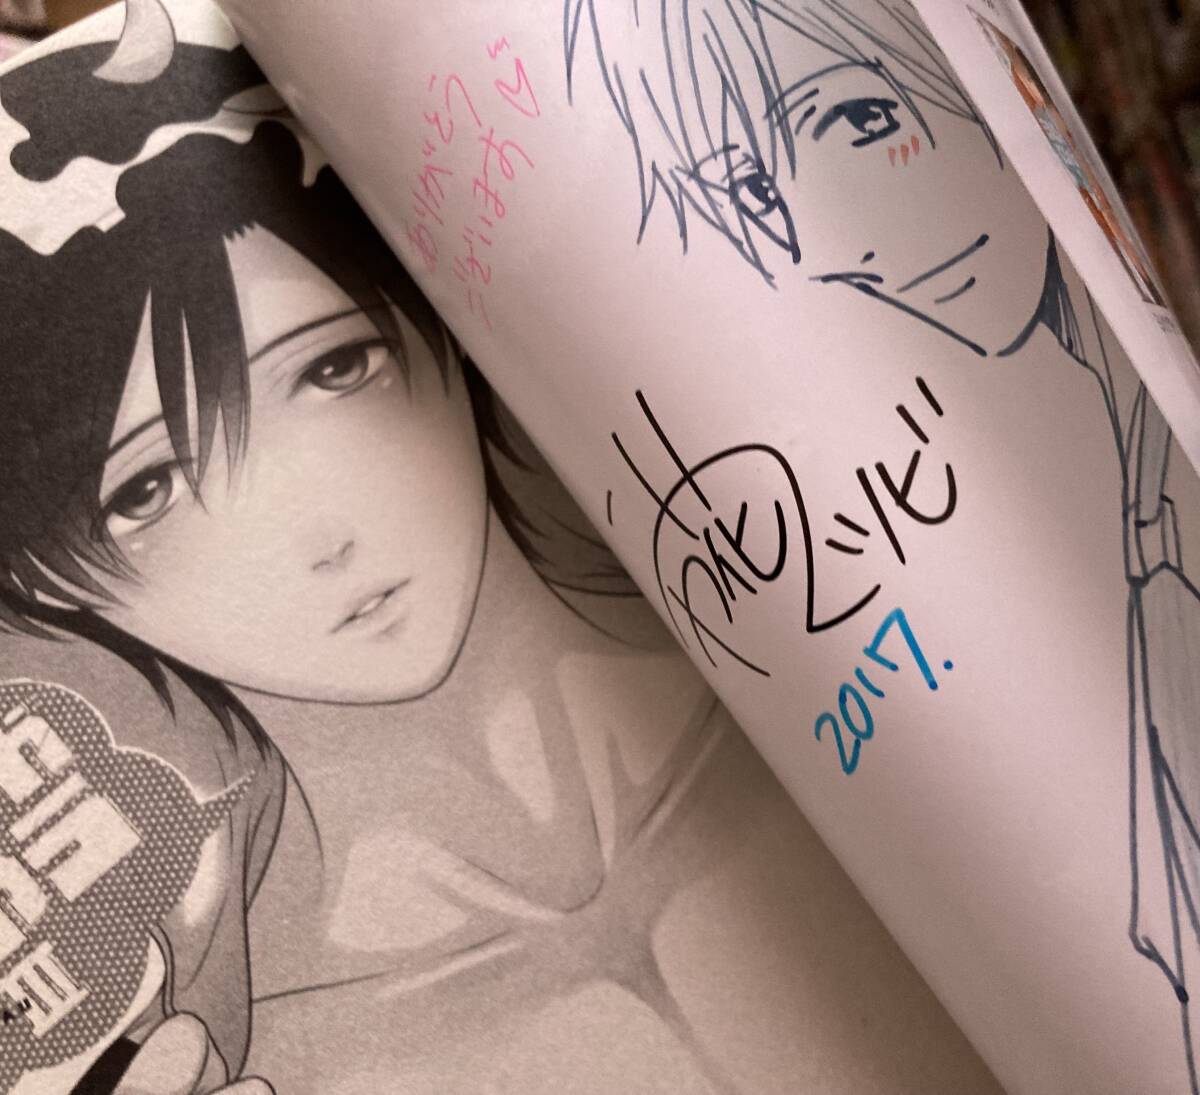 BL Milk Comes Out 3. Autogrammiertes Buch mit handgeschriebenen Charakterillustrationen von Matsubi Ichihana. Signiertes Buch mit handgeschriebenen Charakterillustrationen, Buch, Zeitschrift, Comics, Comics, Jungs lieben